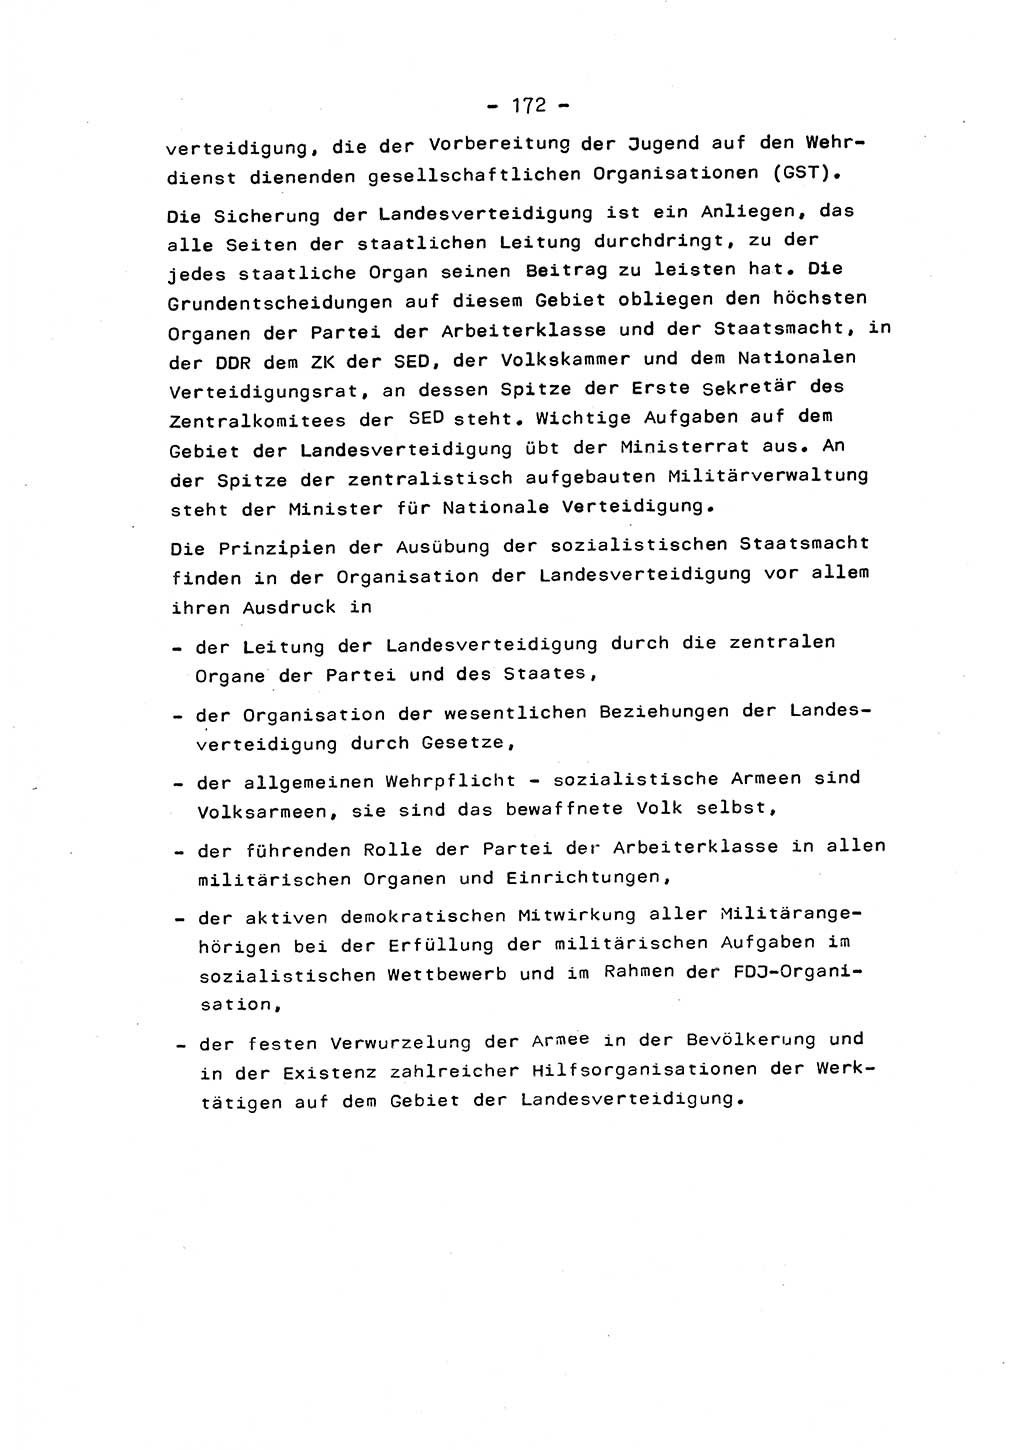 Marxistisch-leninistische Staats- und Rechtstheorie [Deutsche Demokratische Republik (DDR)] 1975, Seite 172 (ML St.-R.-Th. DDR 1975, S. 172)